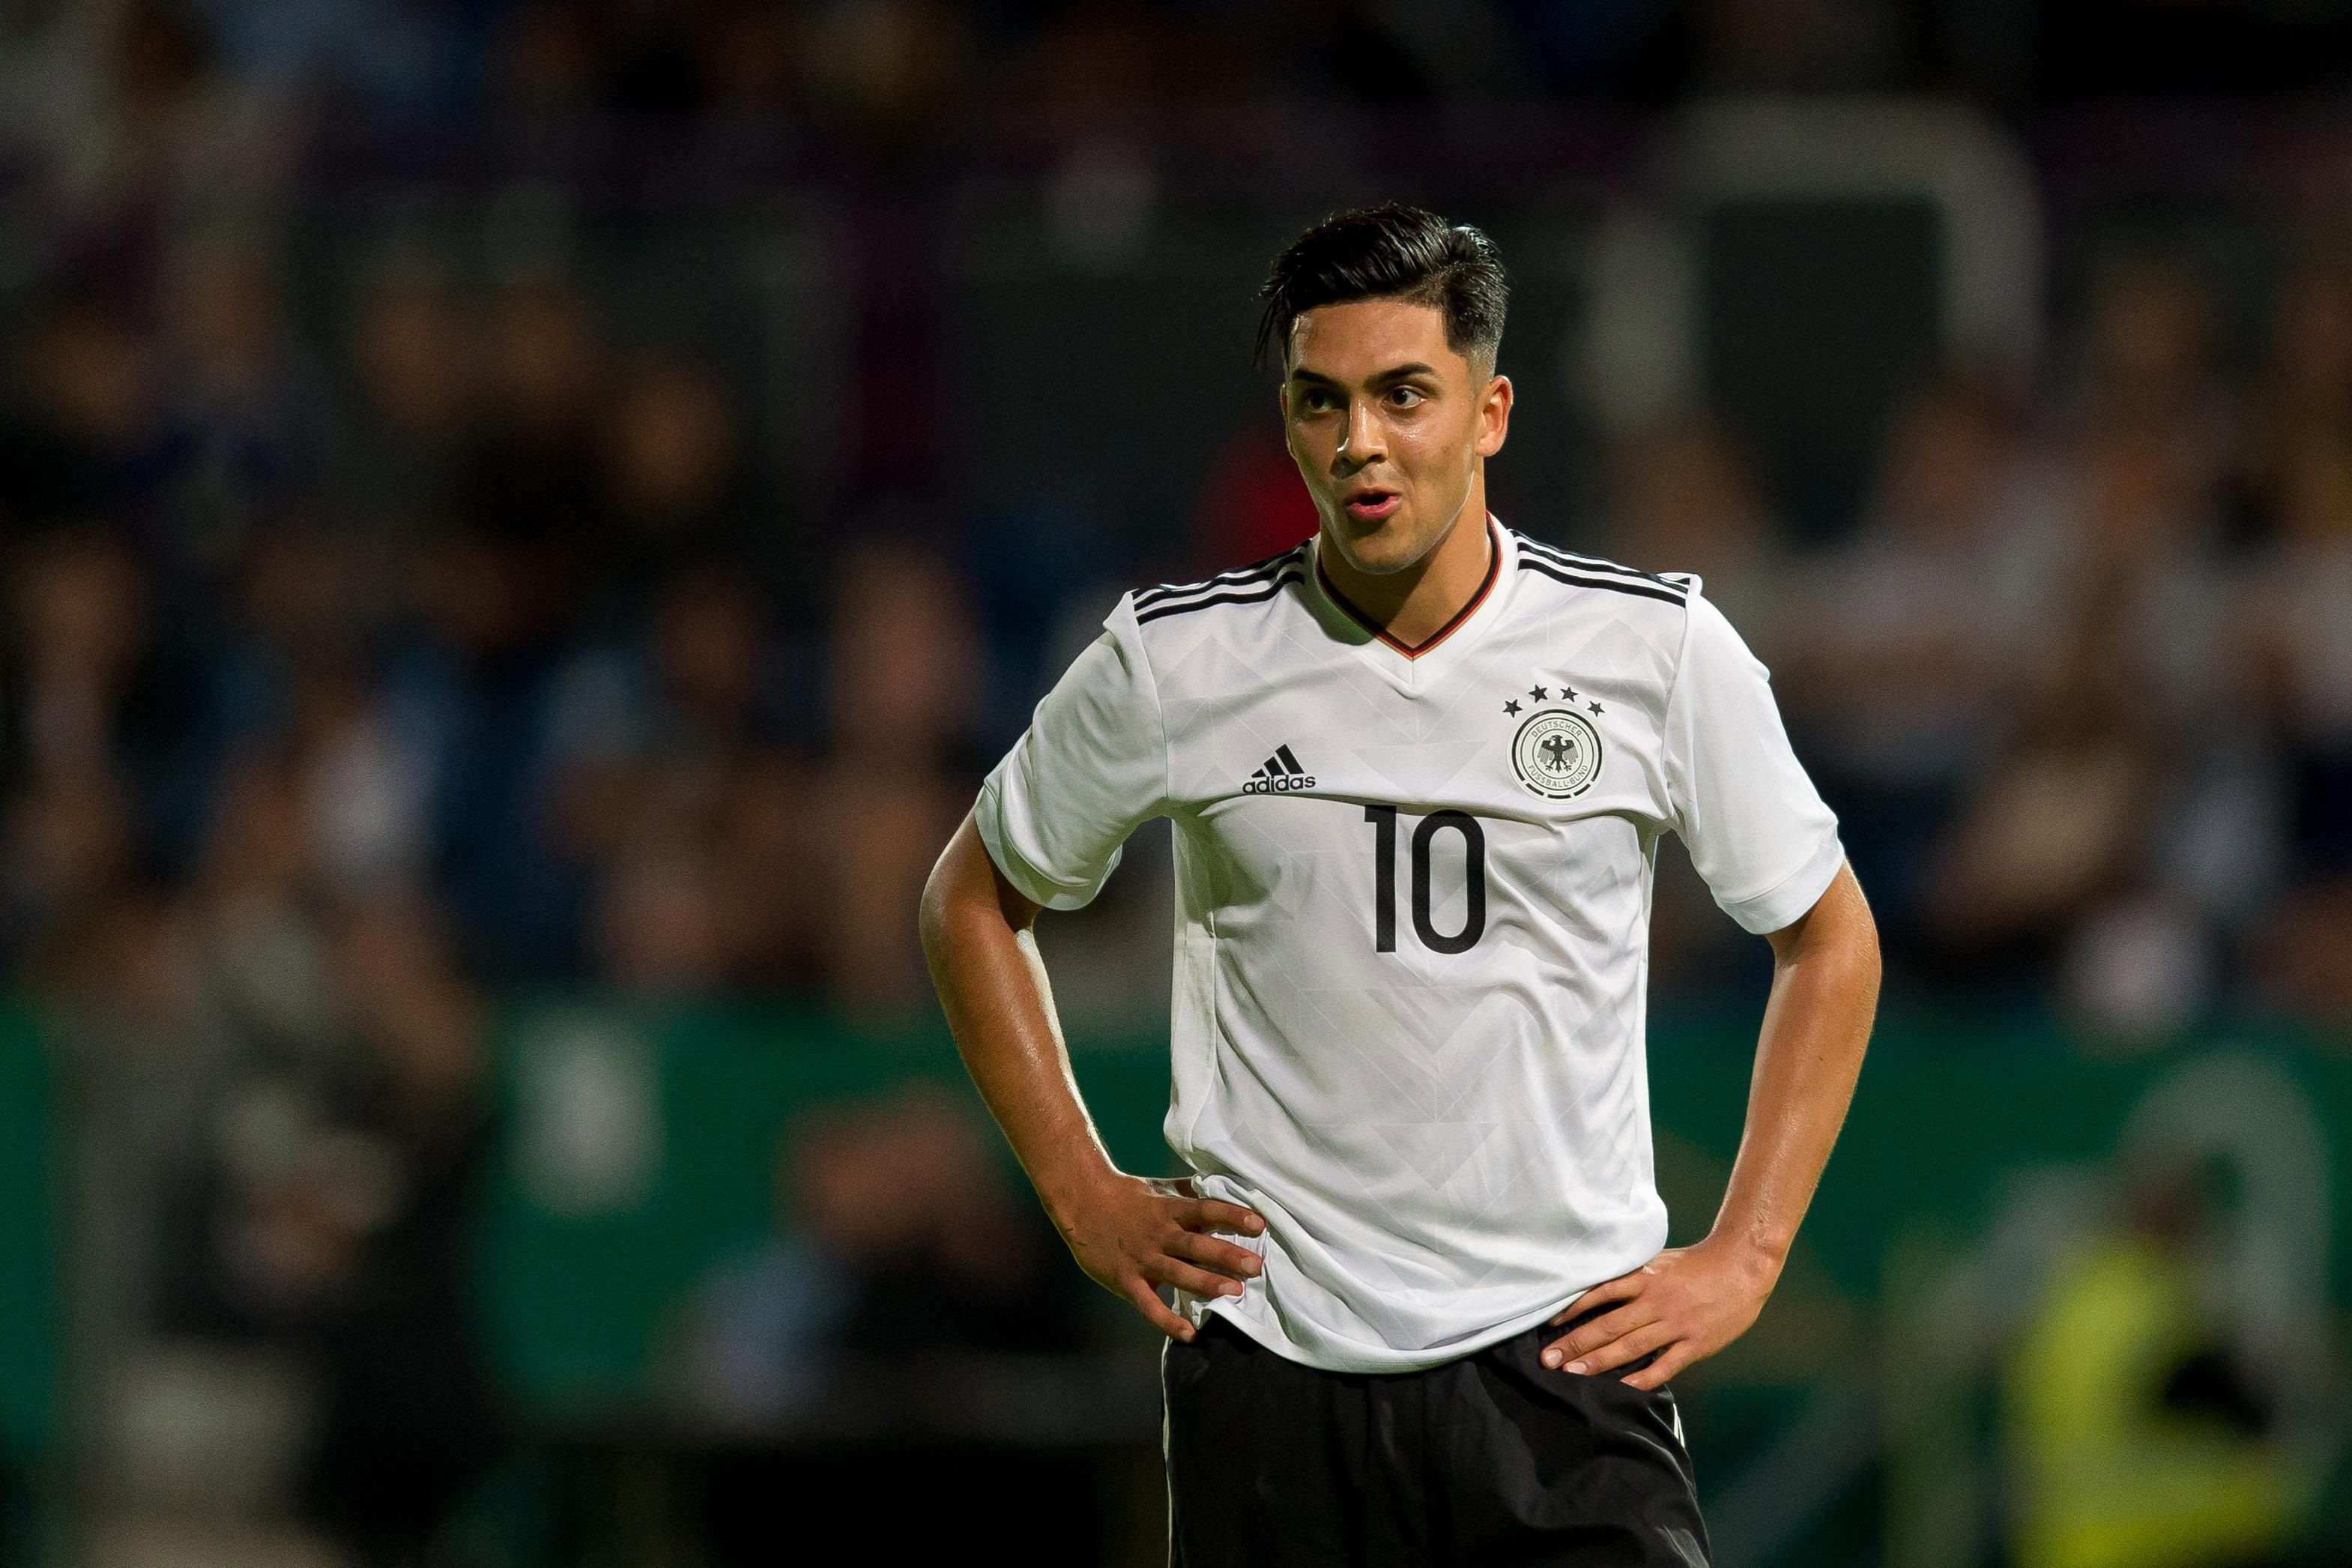 Футболист сборной Германии смотрел матч команды со 170 афганскими беженцами на стадионе